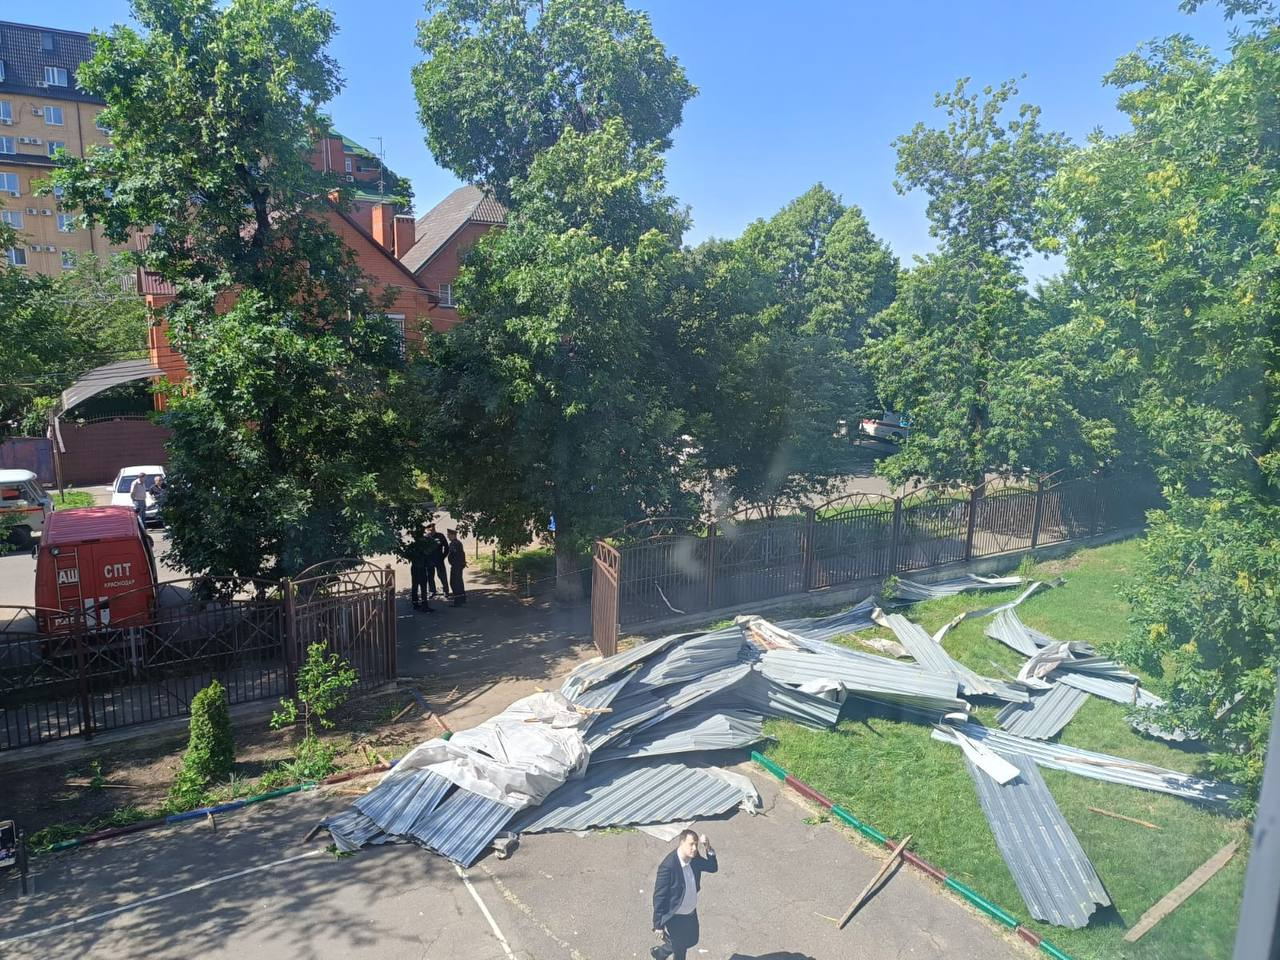 Ветер сорвал крышу со школы в Краснодаре перед торжественной линейкой. 12 учеников получили осколочные ранения